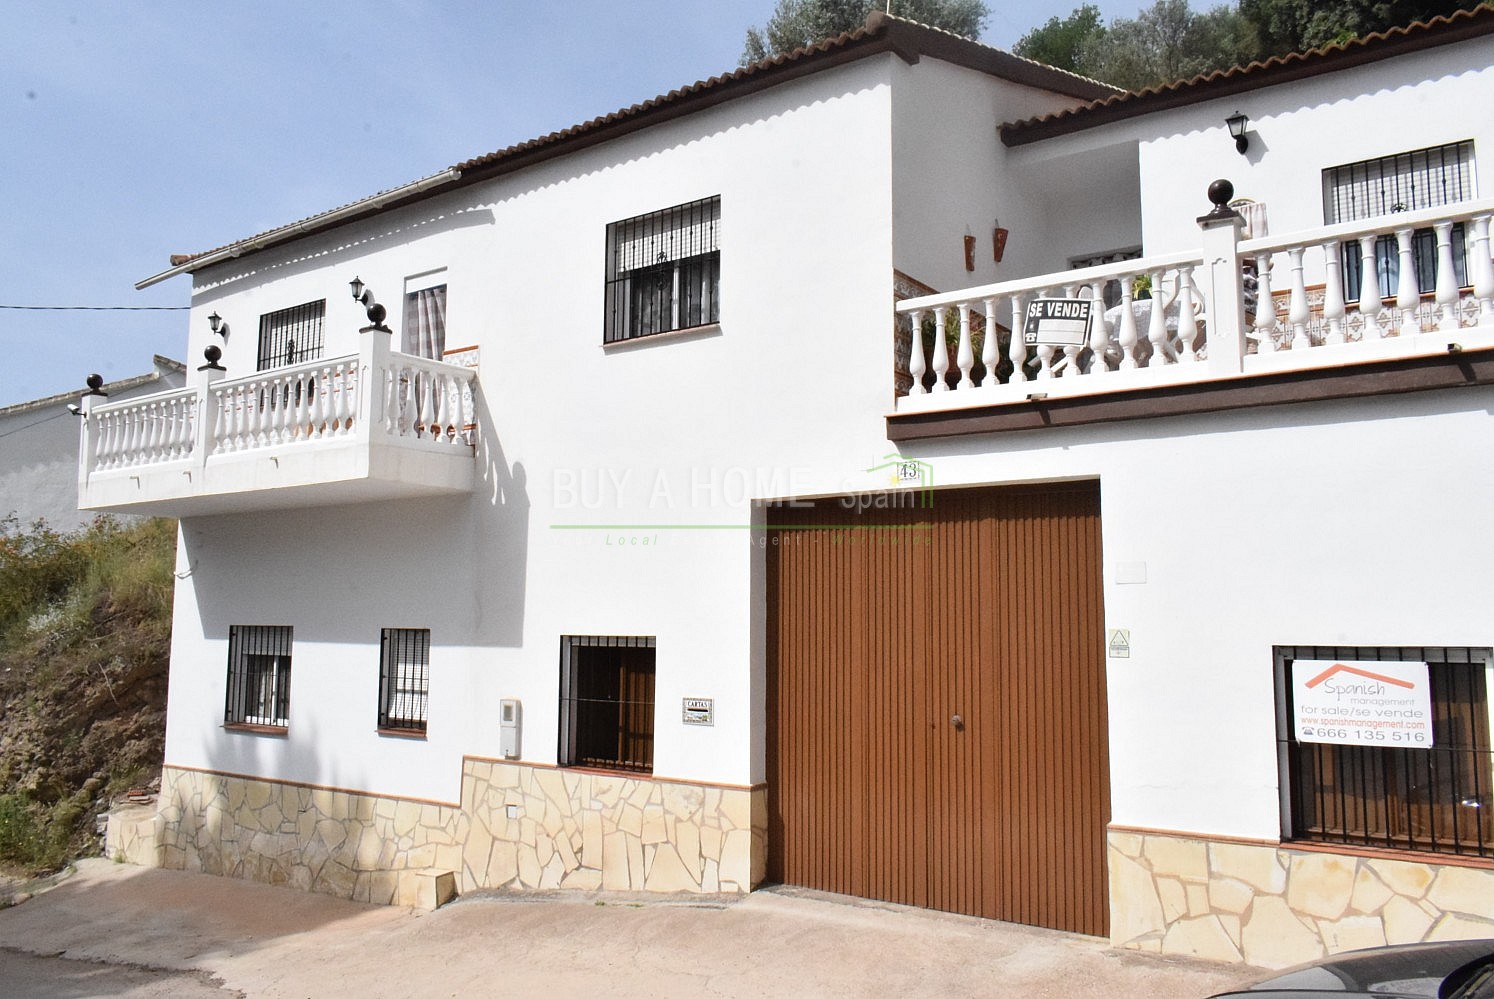 villas for sale in venta baja